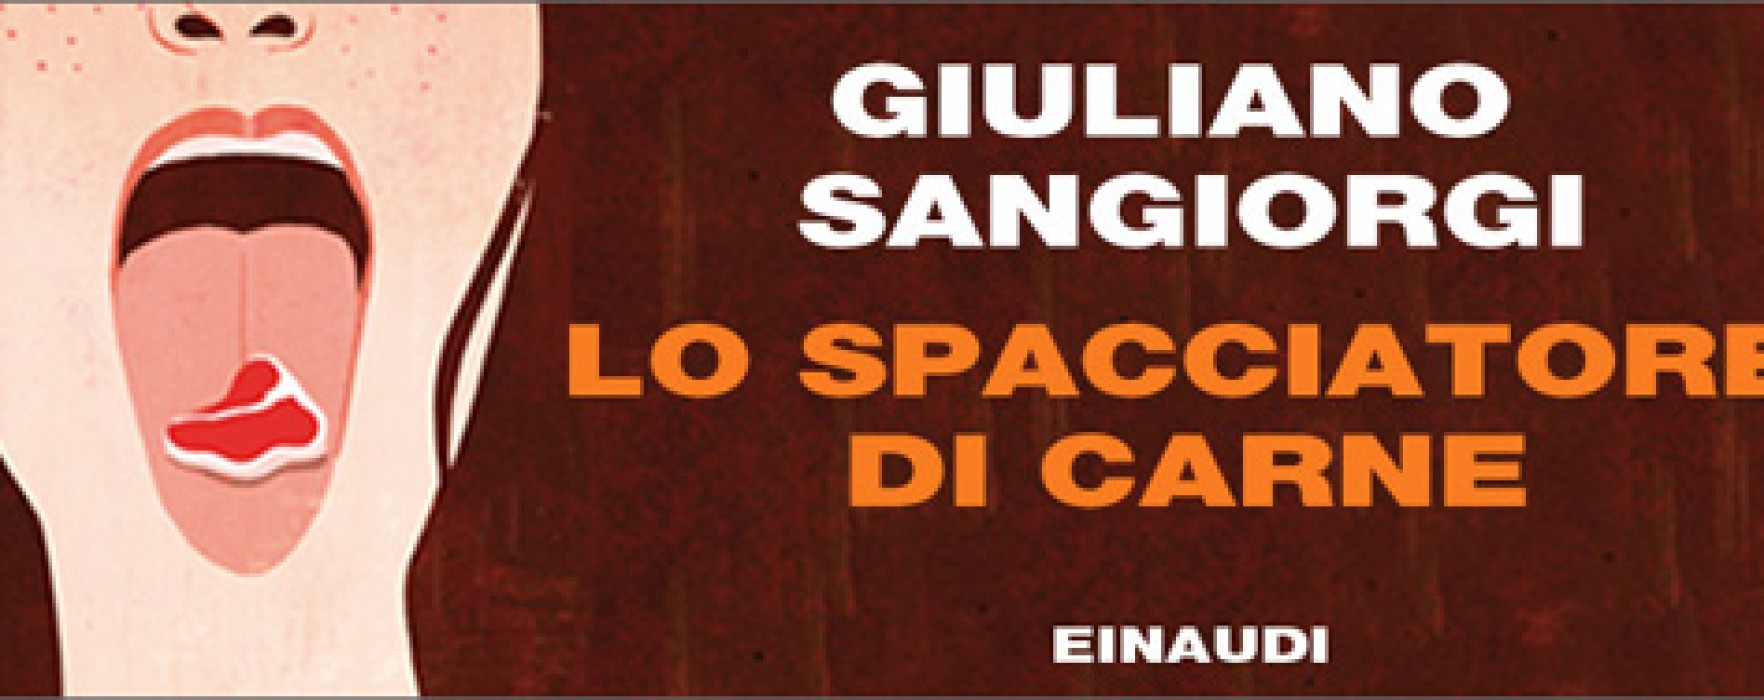 Lo spacciatore di carne di Giuliano Sangiorgi